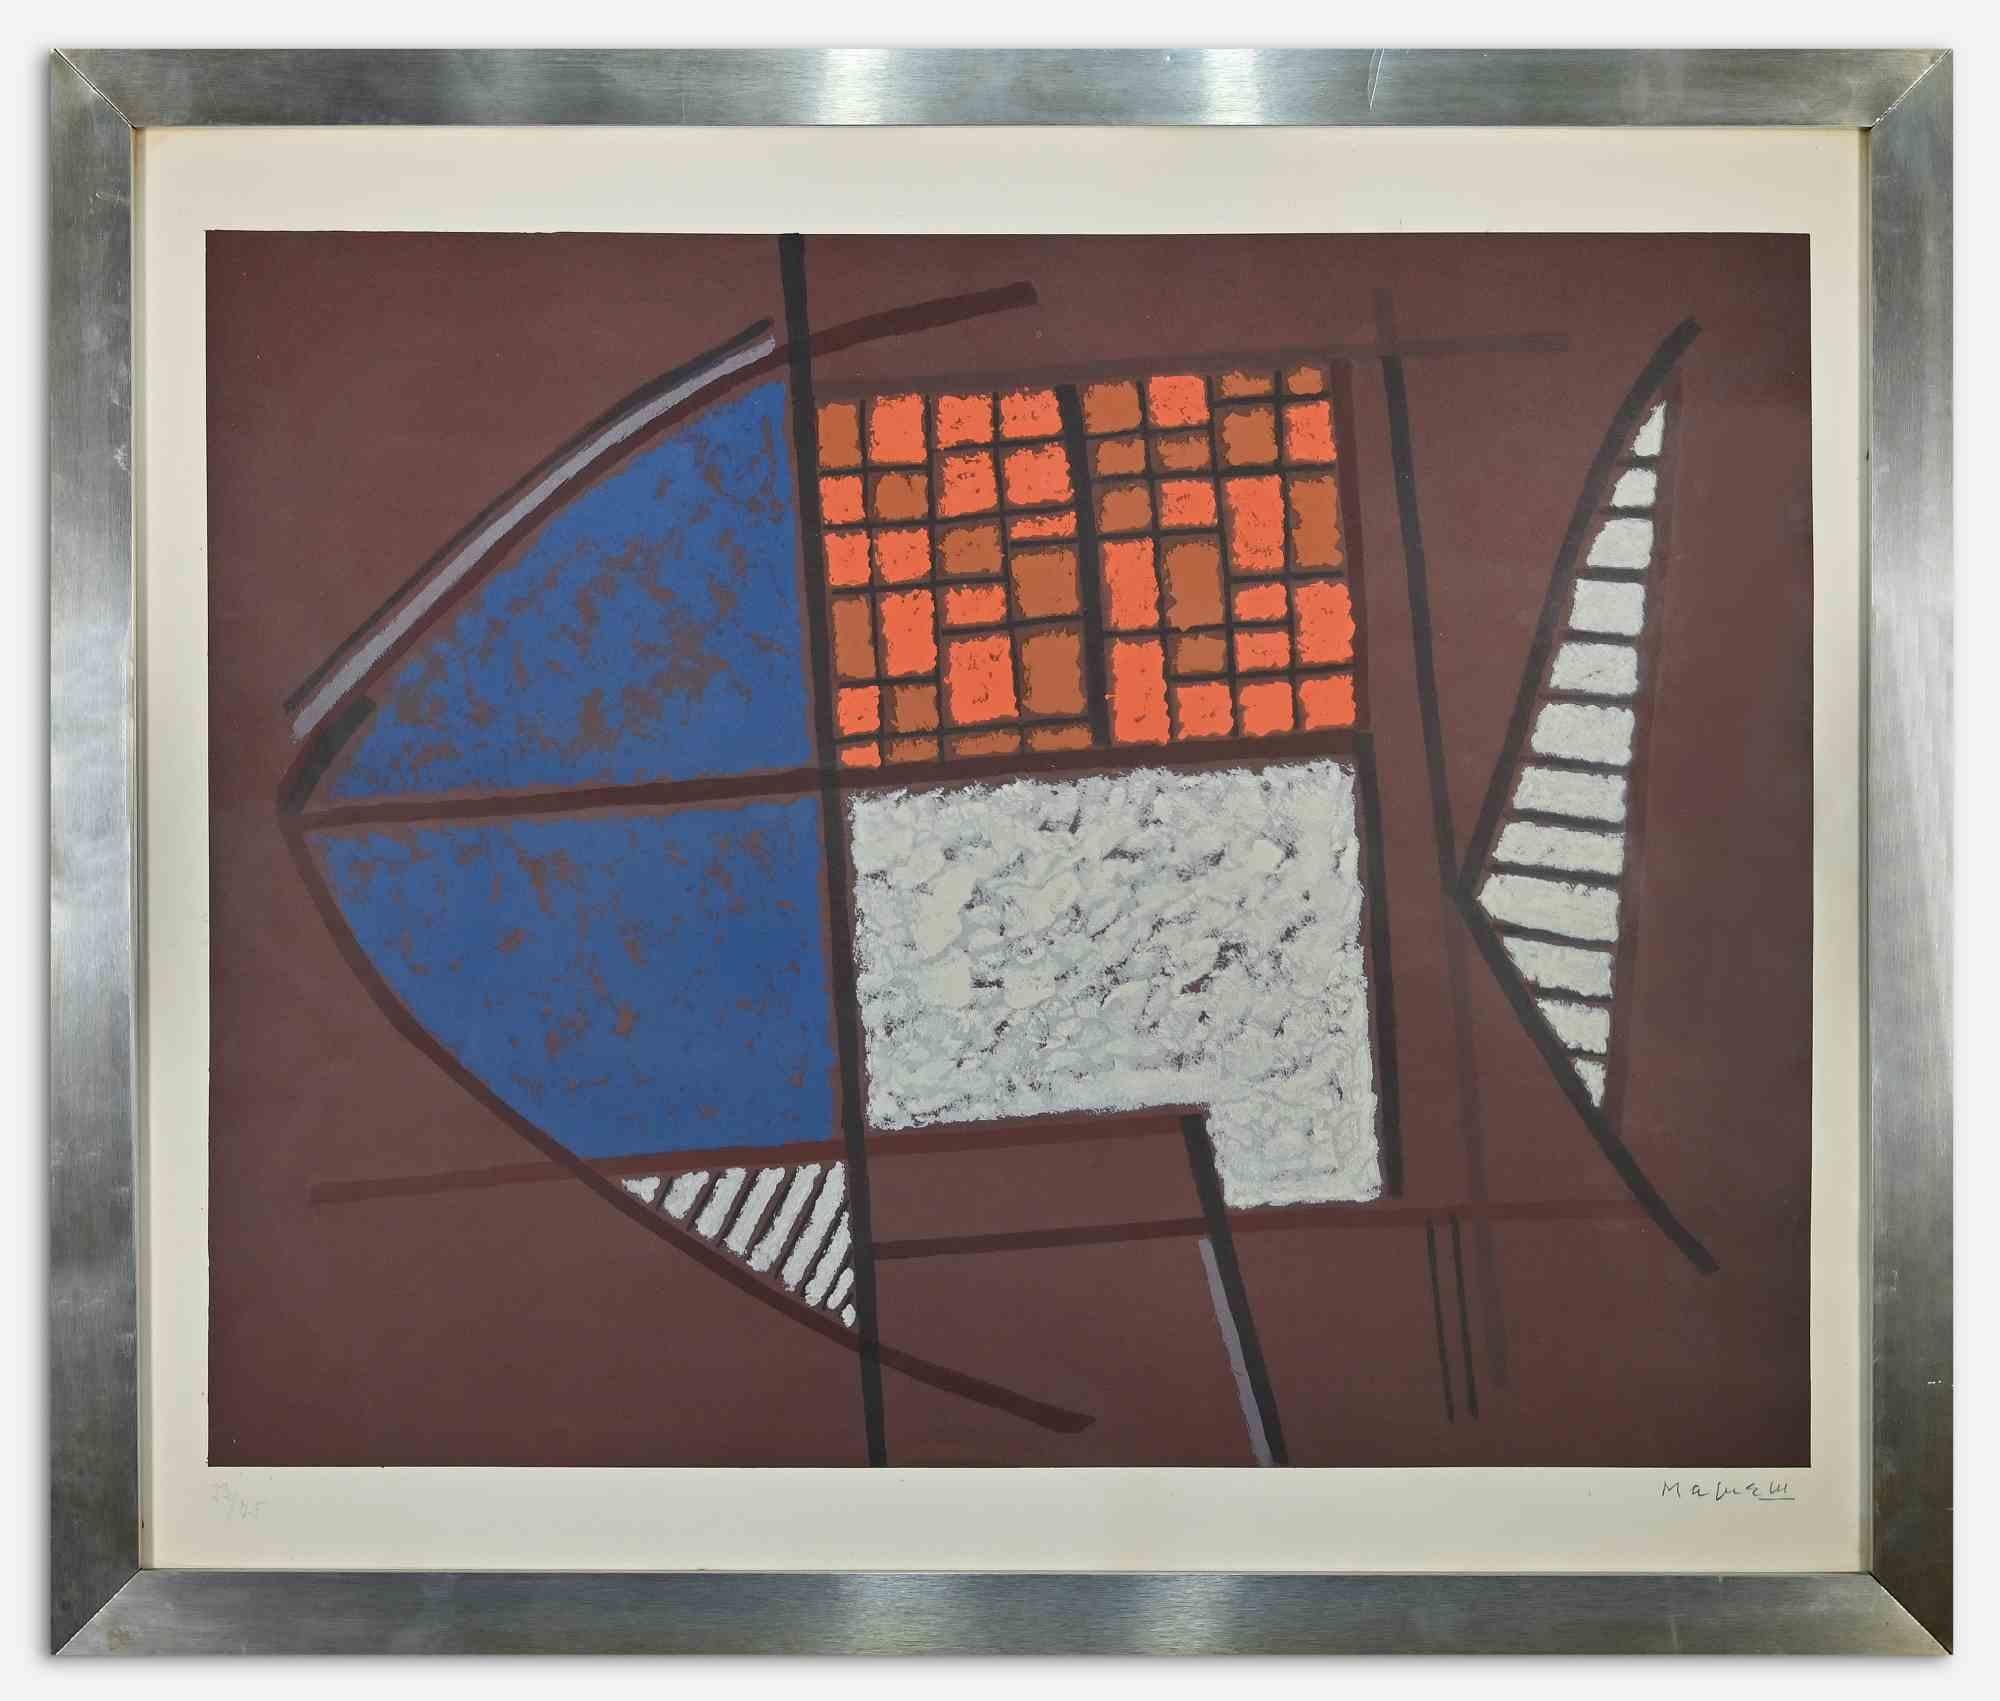 Composition abstraite est une œuvre d'art contemporaine originale réalisée dans les années 1970 par Alberto Magnelli.

Lithographie en couleurs mélangées.

Bon état, à l'exception d'un léger jaunissement du papier.

Signé à la main dans la marge